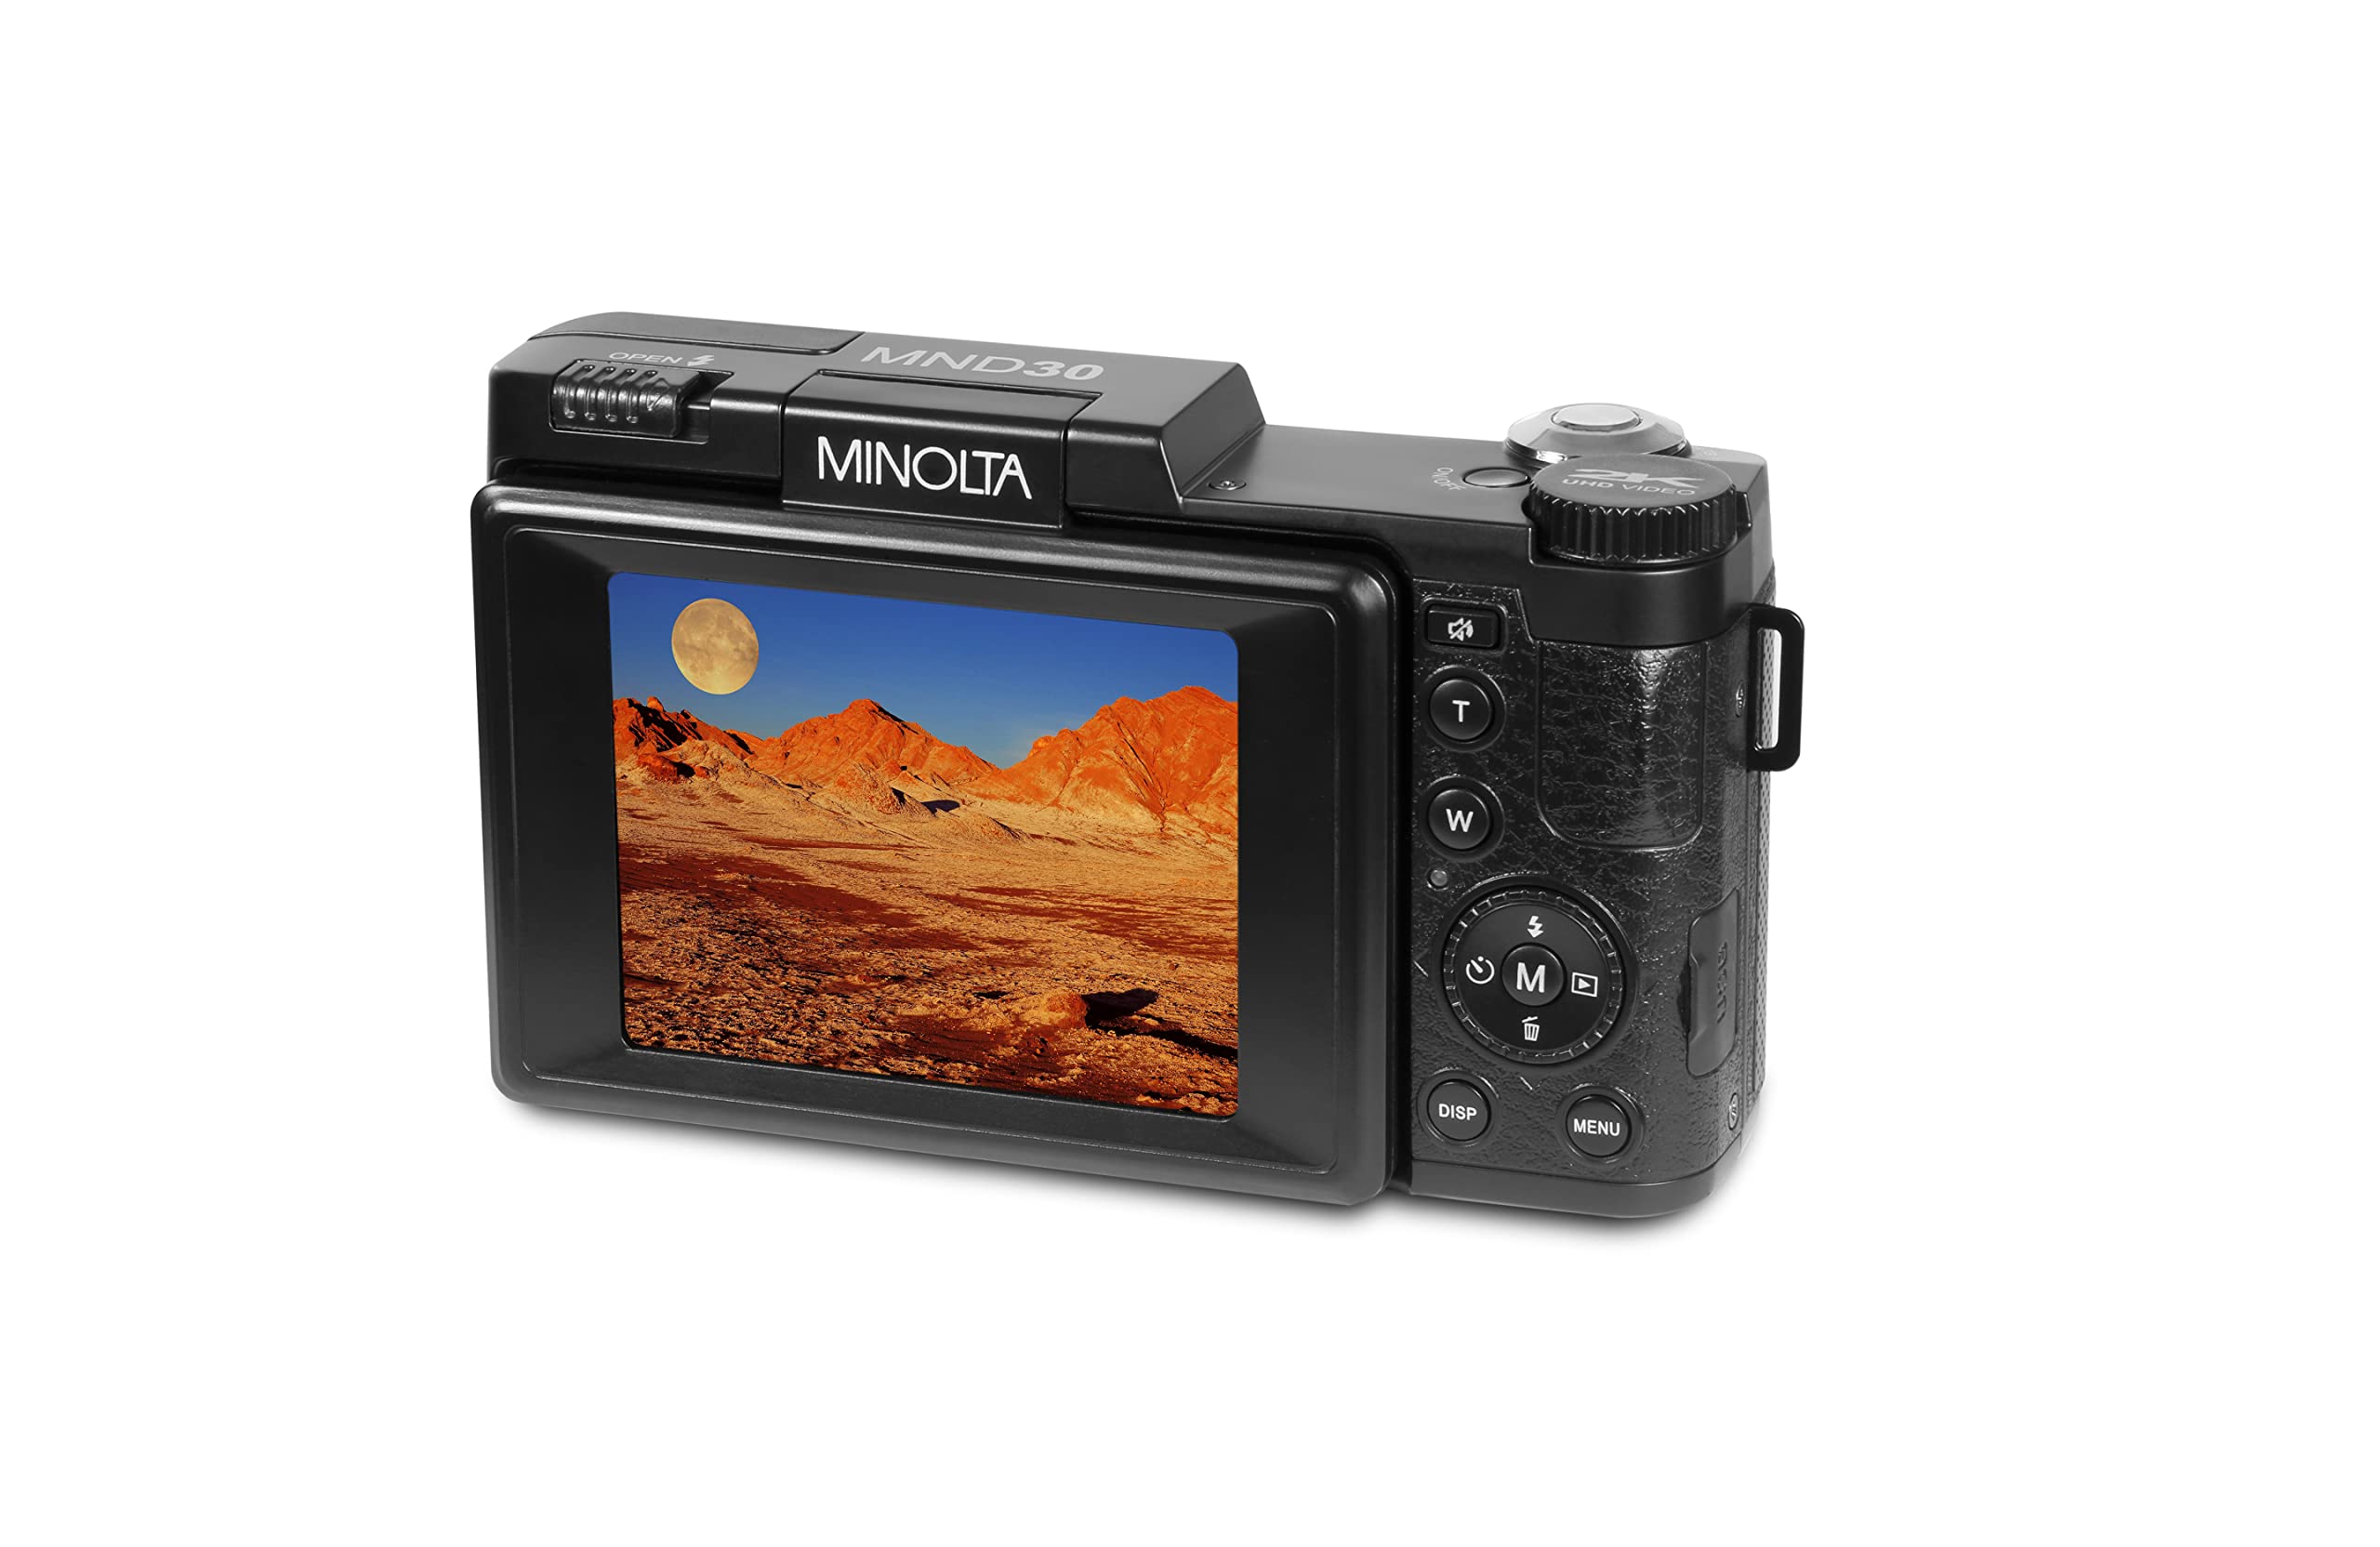 Minolta MND30 30 MP / 2.7K Ultra HD Digital Camera (Purple)